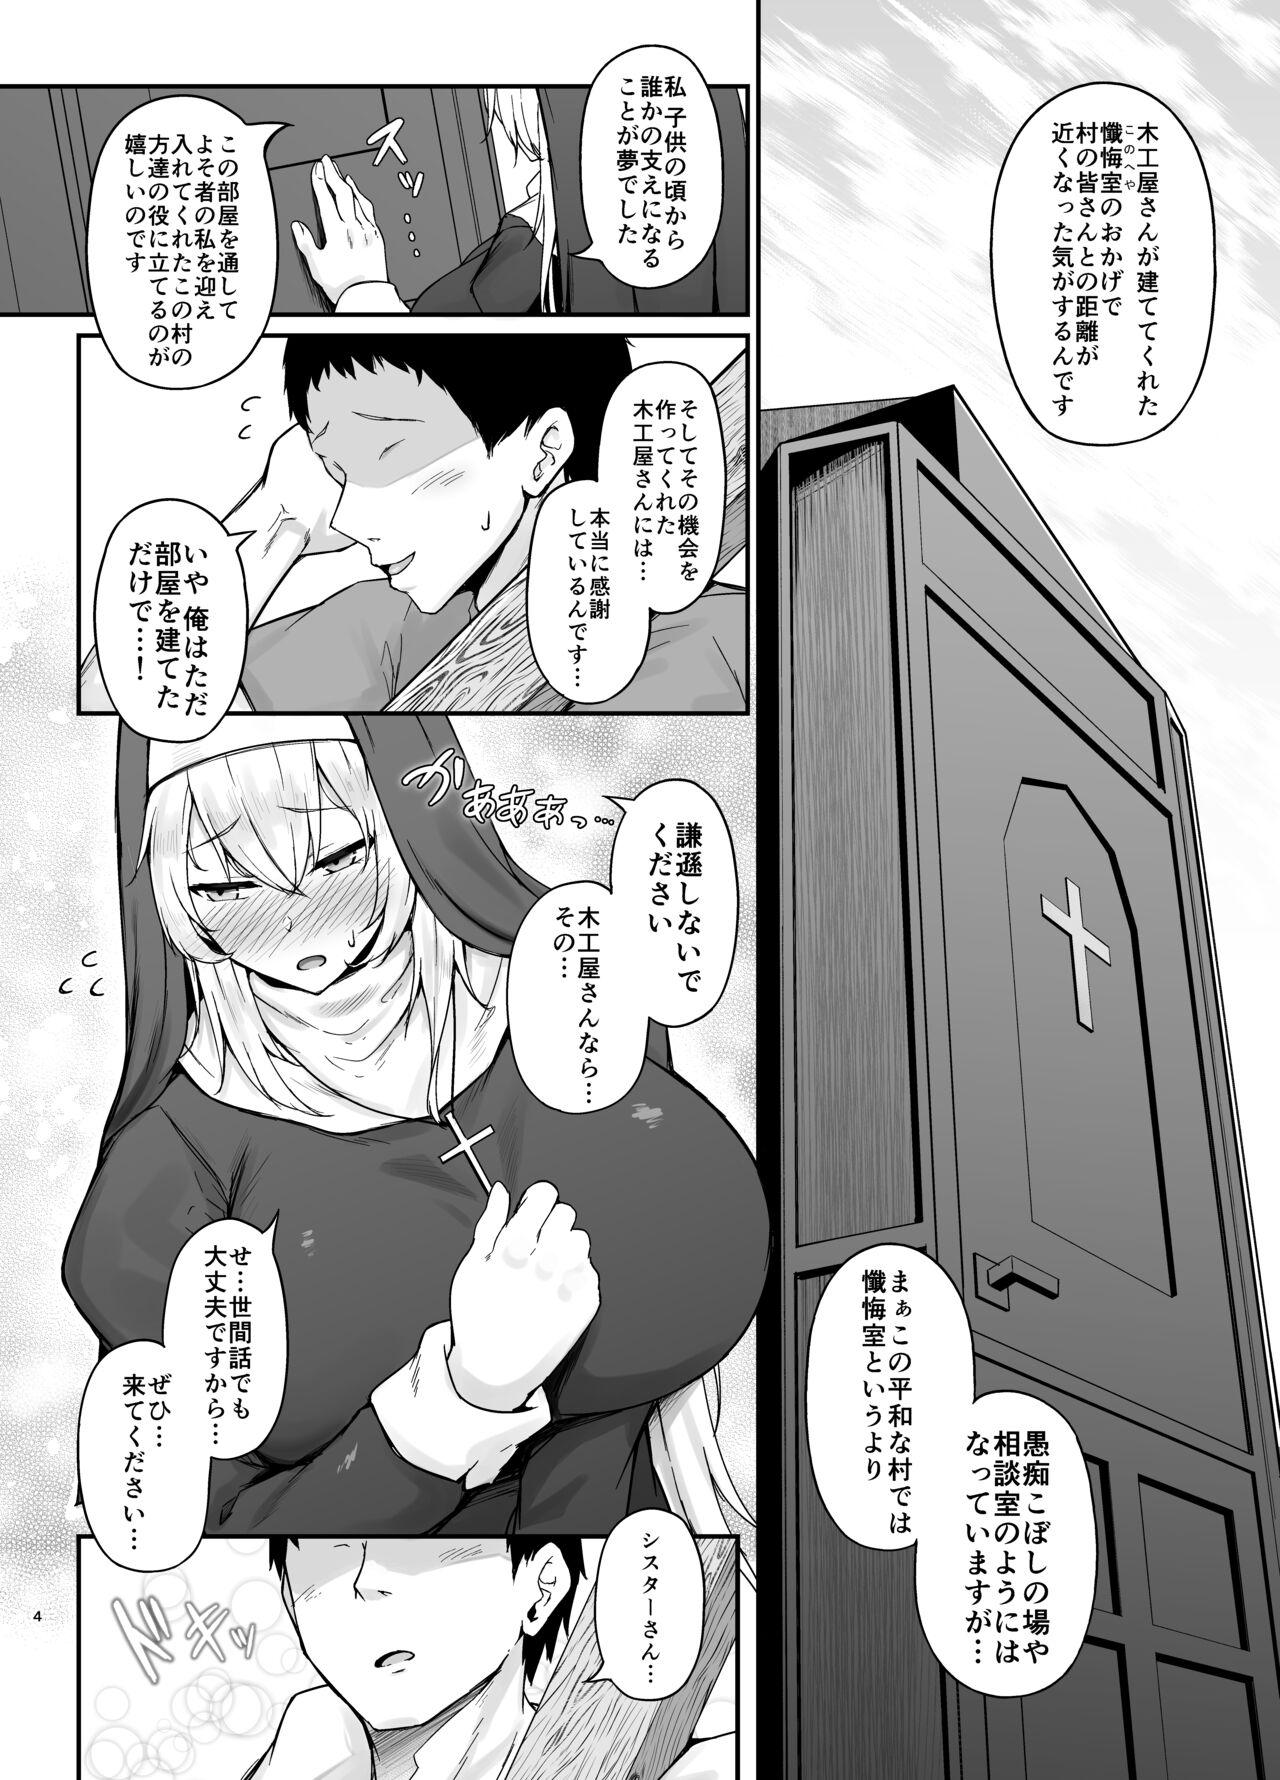 Masterbate Hin no Nai Onna wa Kirai desu ka? - Original Amatuer - Page 3